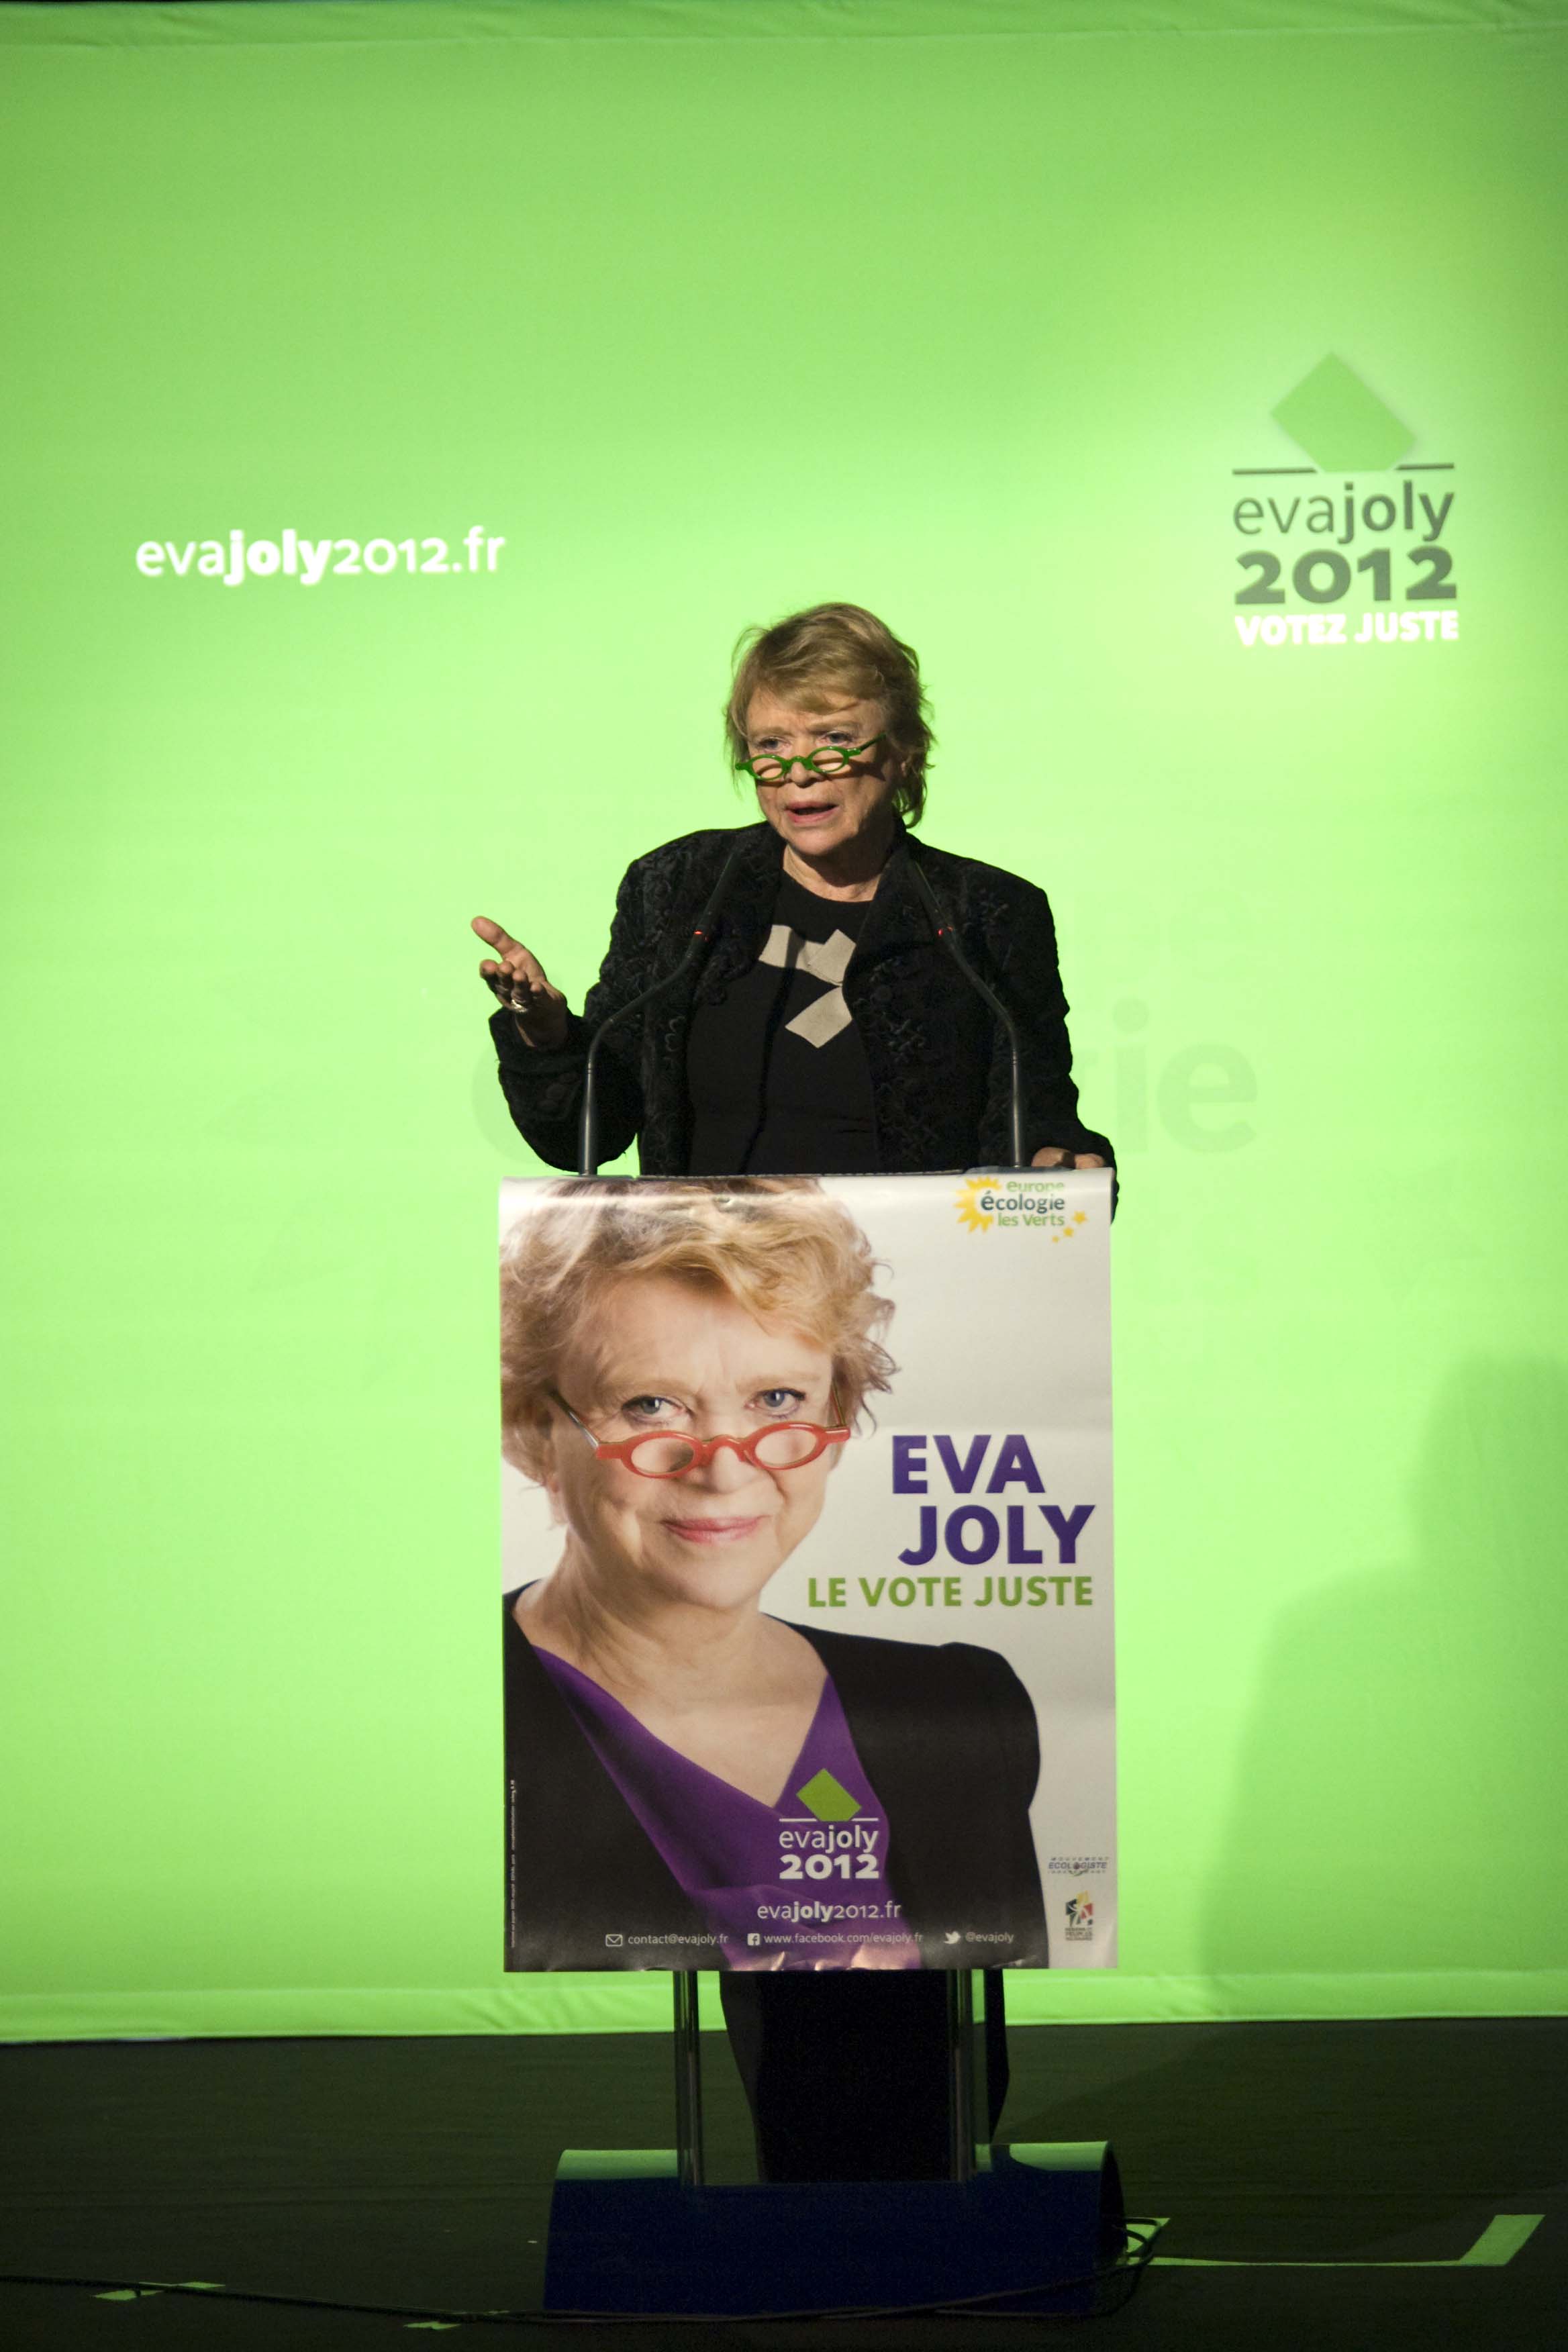 Eva Joly